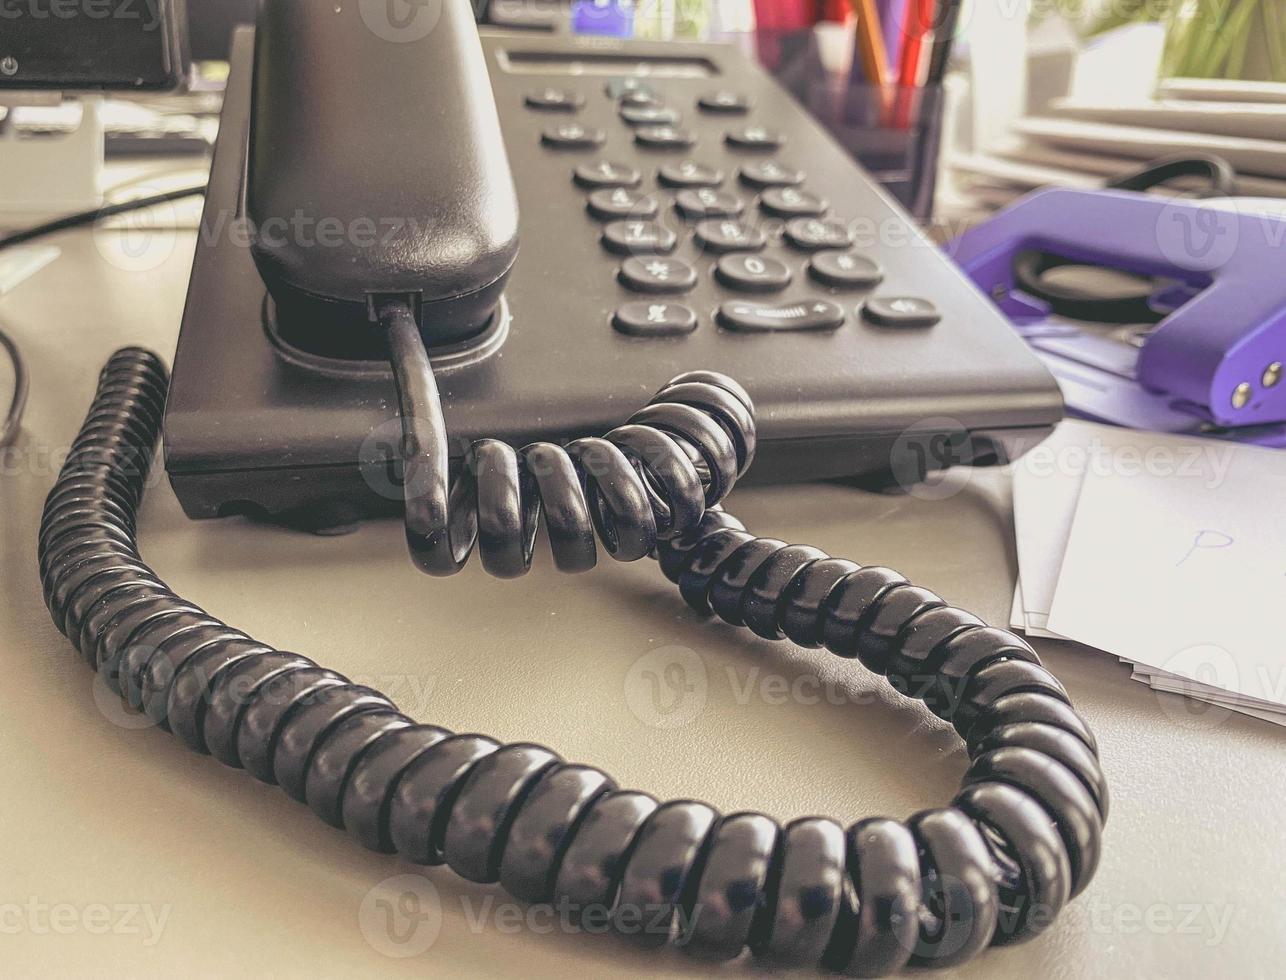 telefone fixo no escritório em cima da mesa. monofone preto com botões e display. meios de comunicação no escritório. fio preto no tubo foto